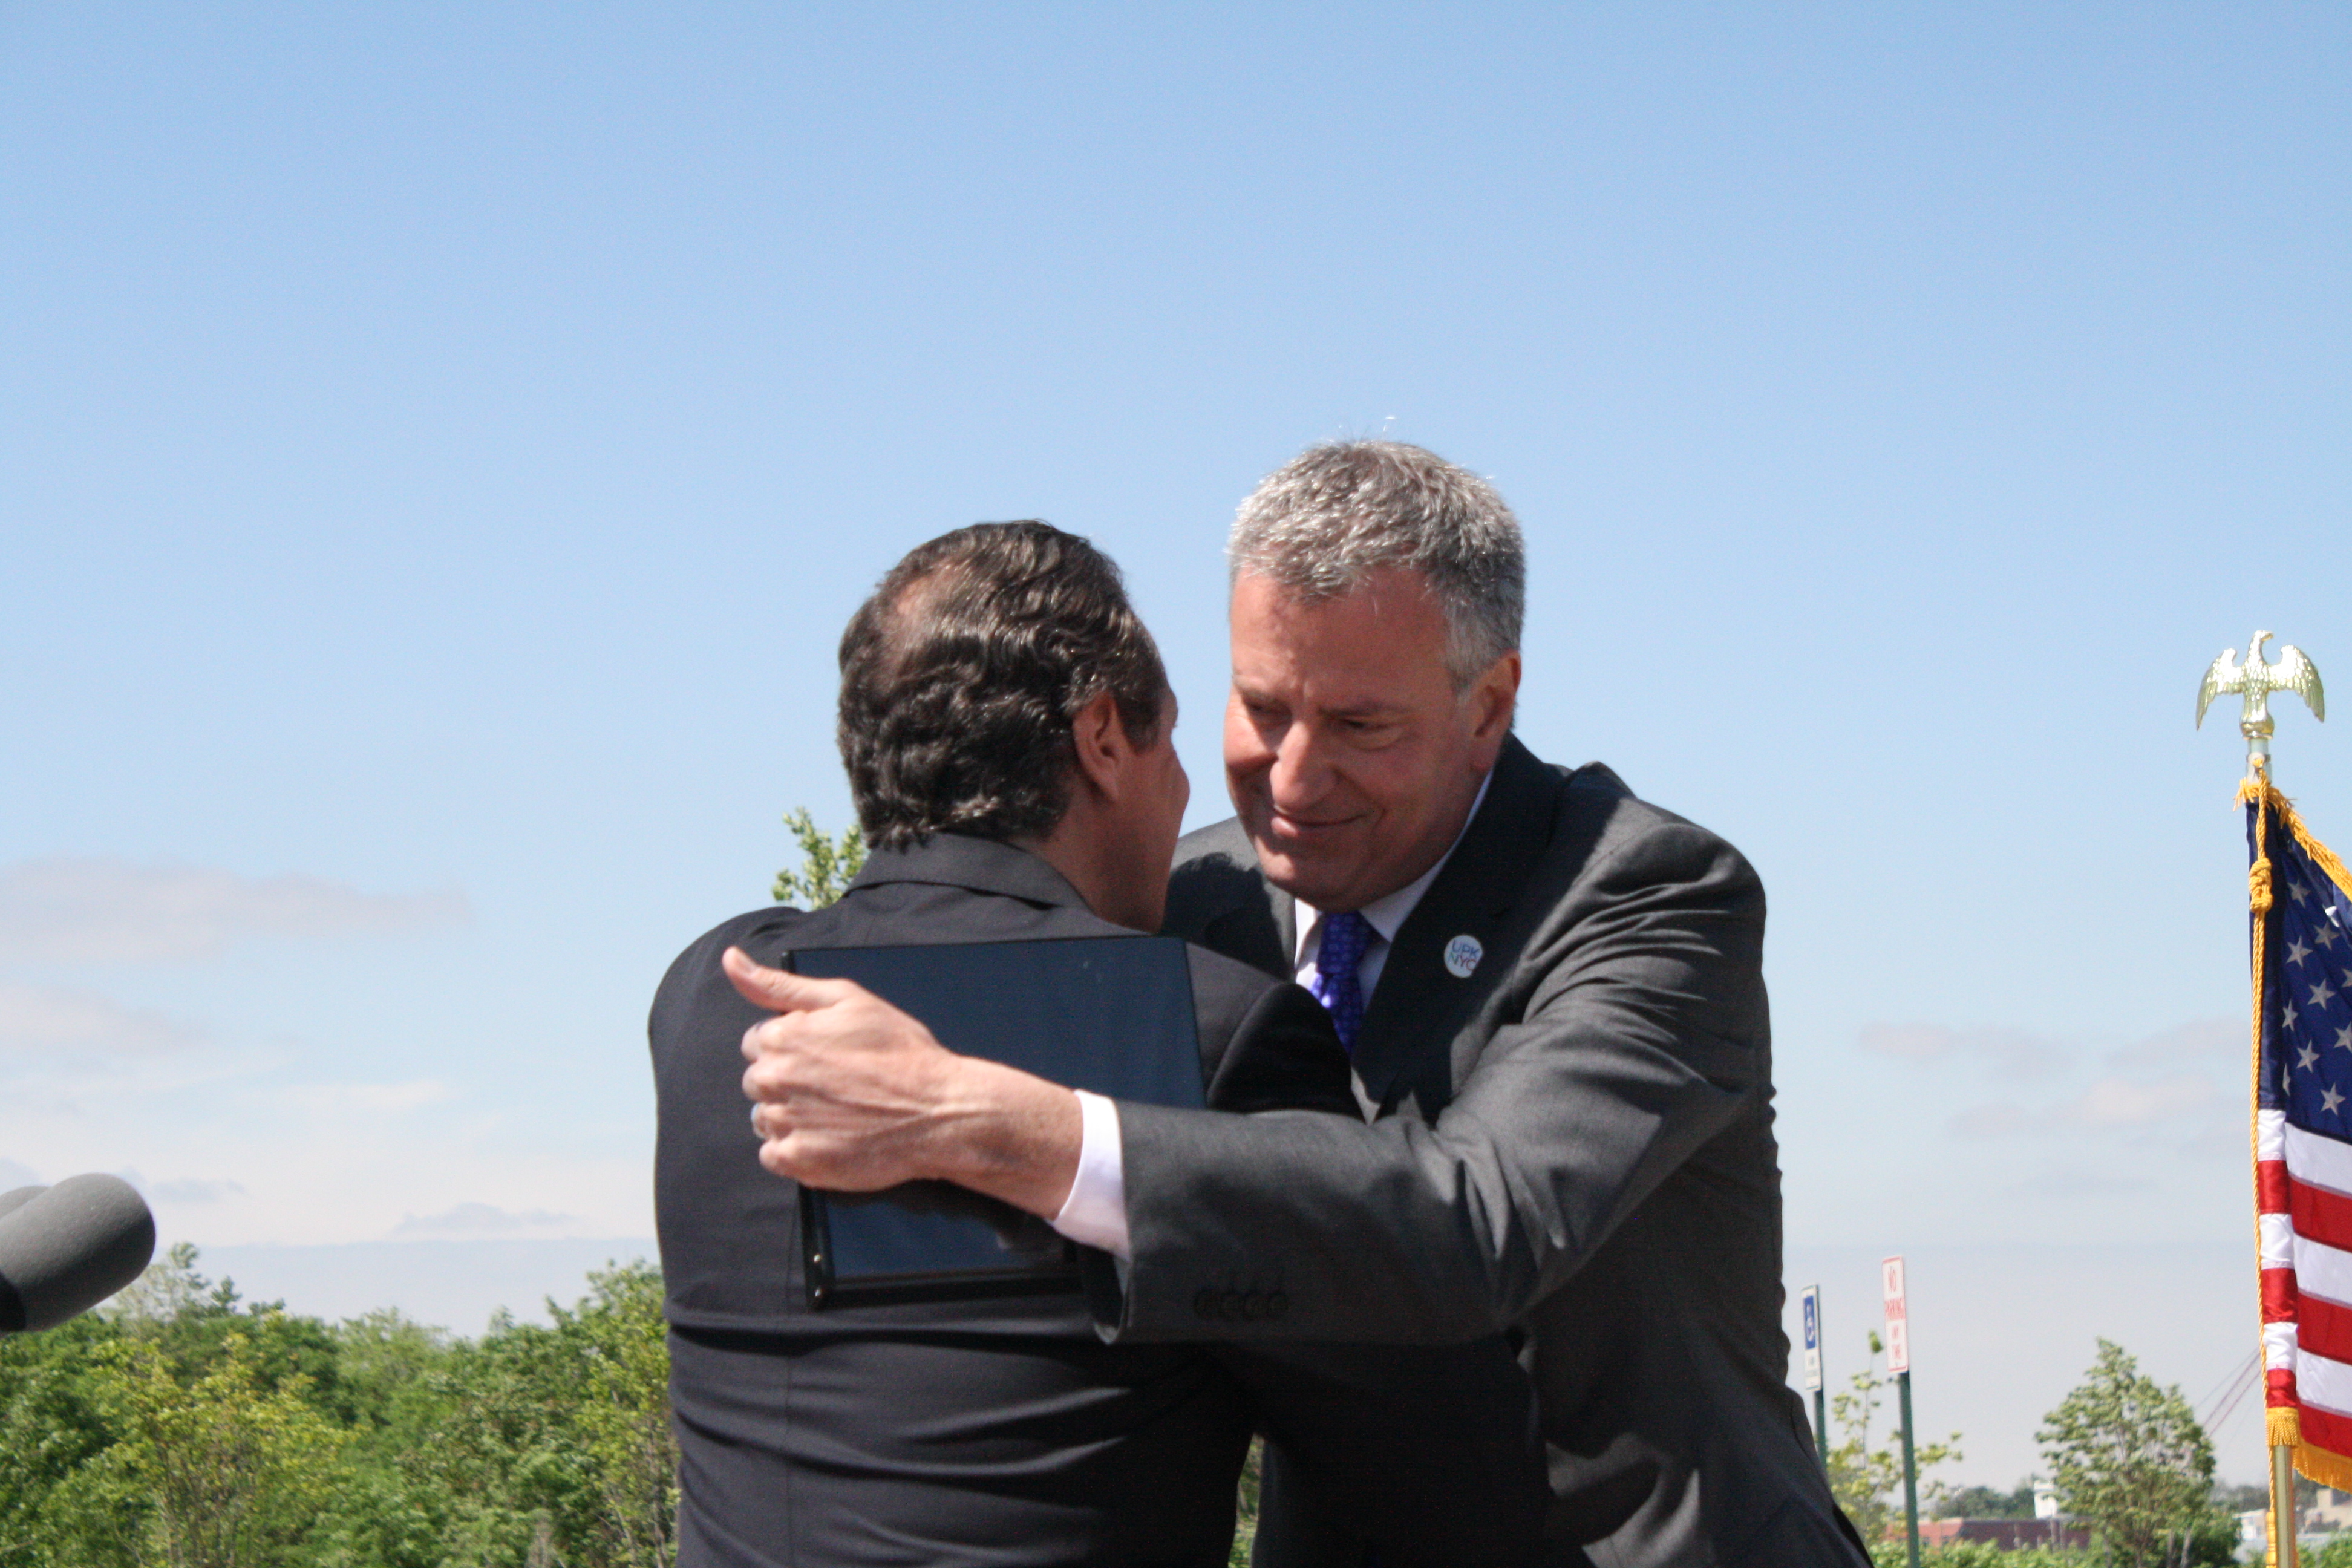 Gov. Andrew Cuomo and Mayor Bill de Blasio hug. (Photo: Vanessa Ogle)